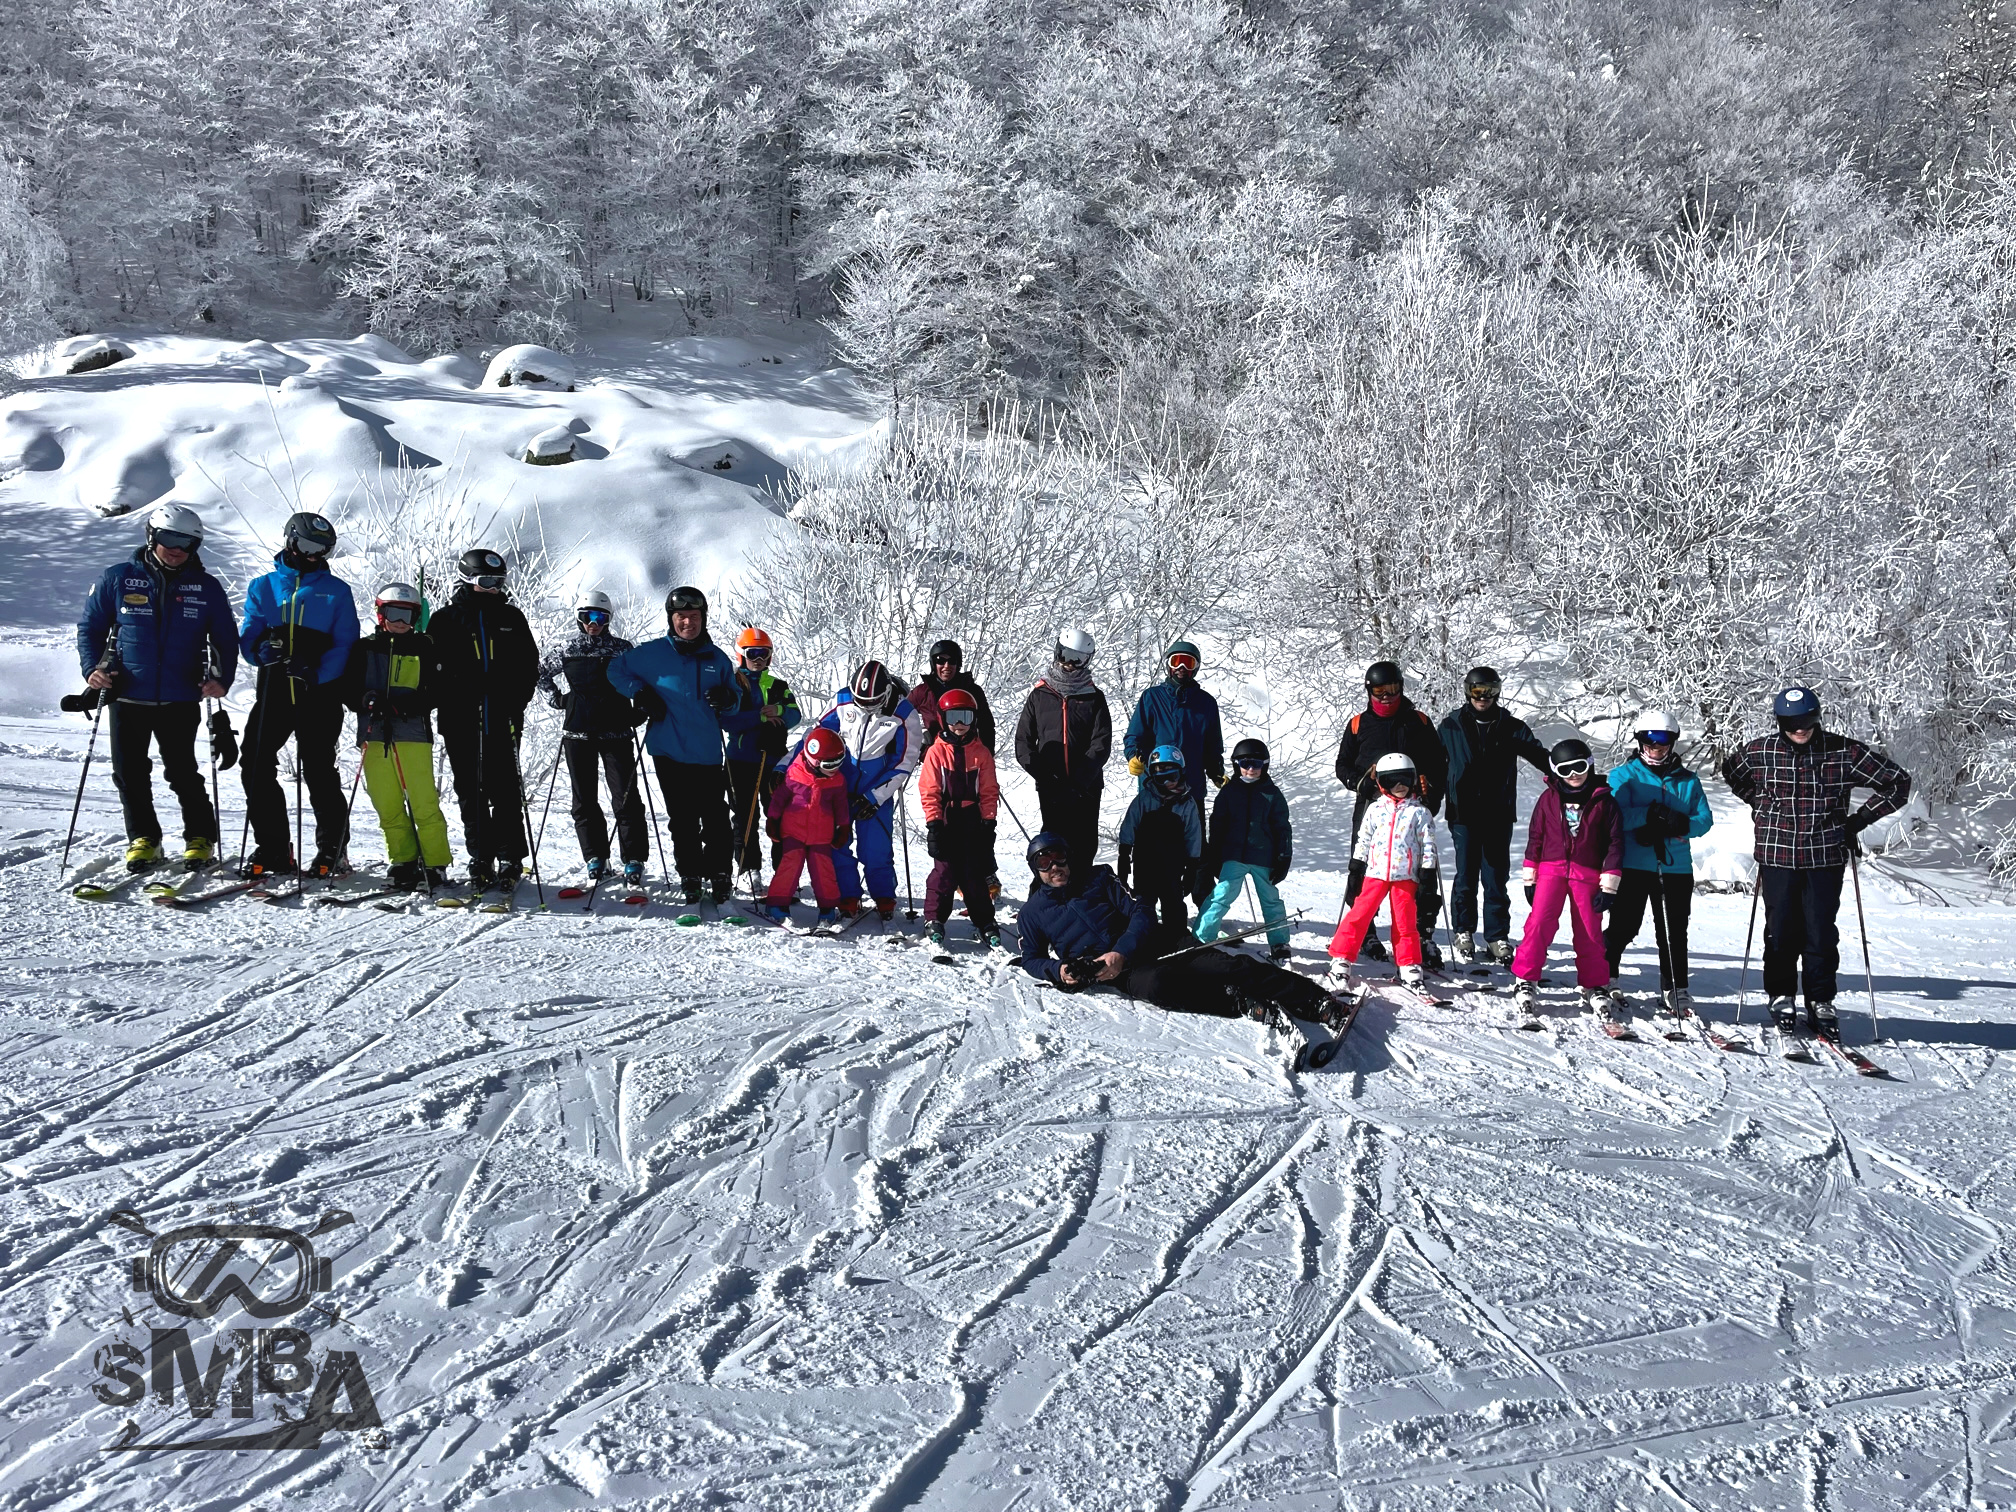 SMBA - Ski Club Pamiers